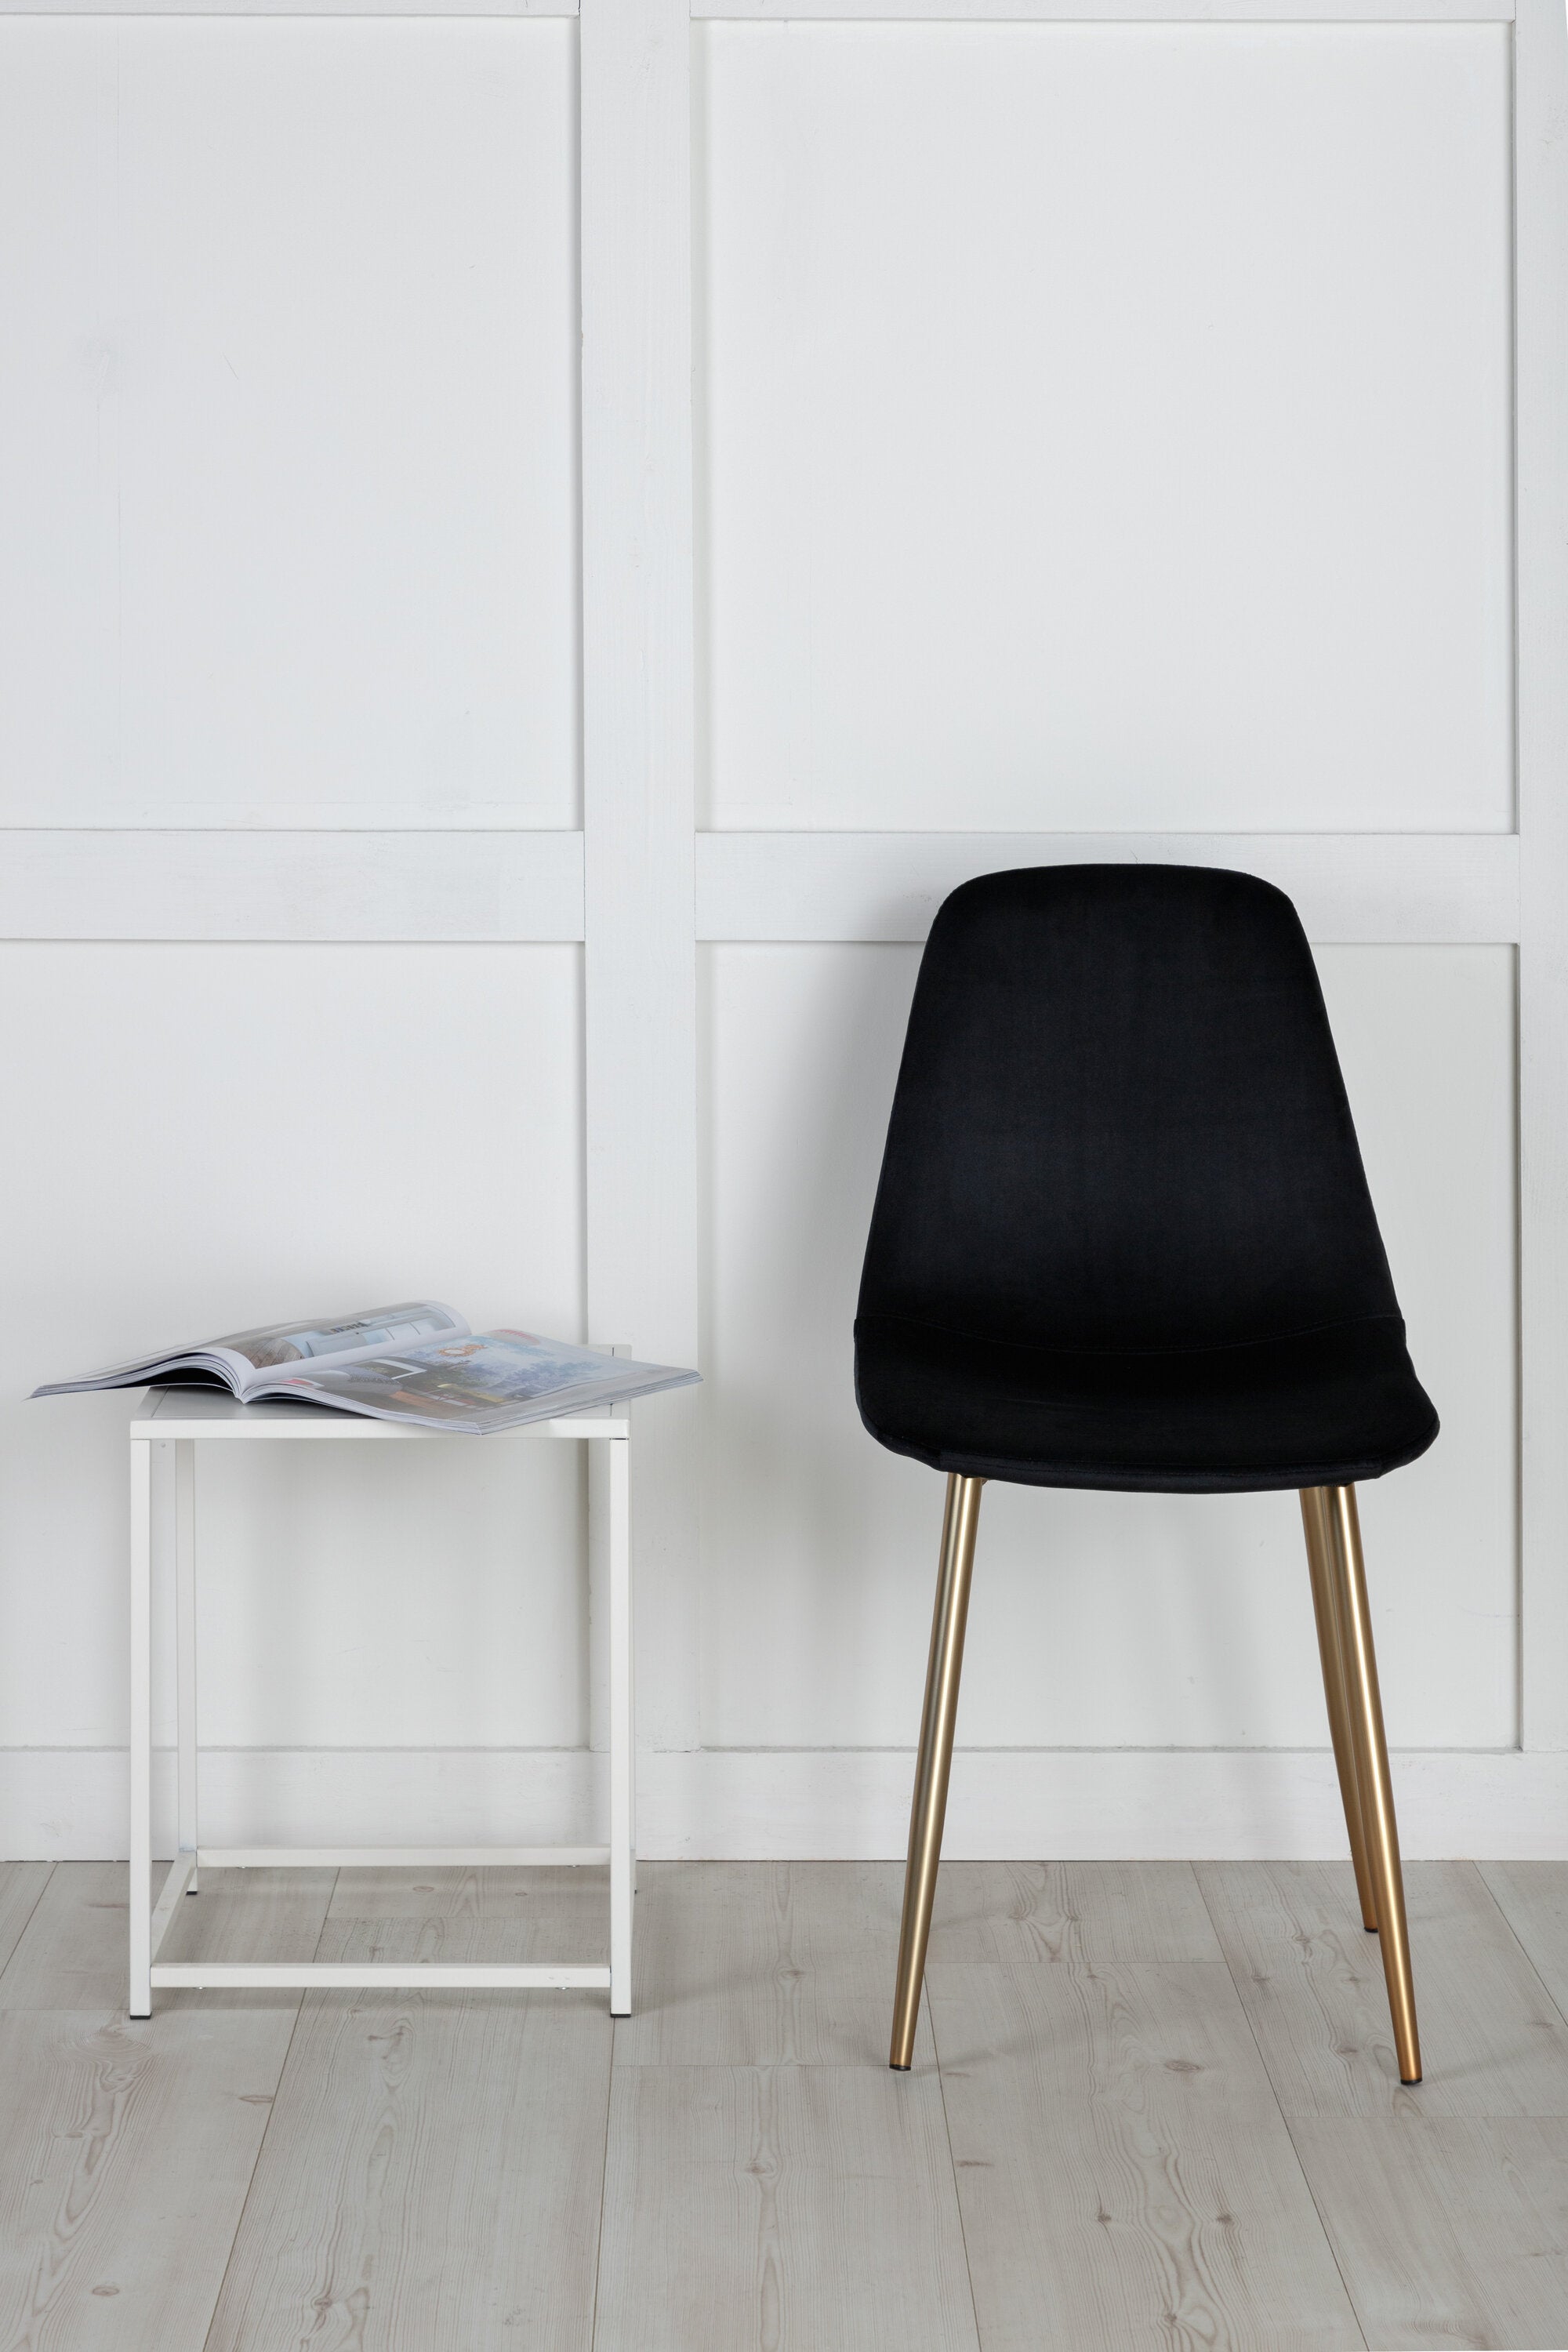 Polar Stuhl in Schwarz präsentiert im Onlineshop von KAQTU Design AG. Stuhl ist von Venture Home